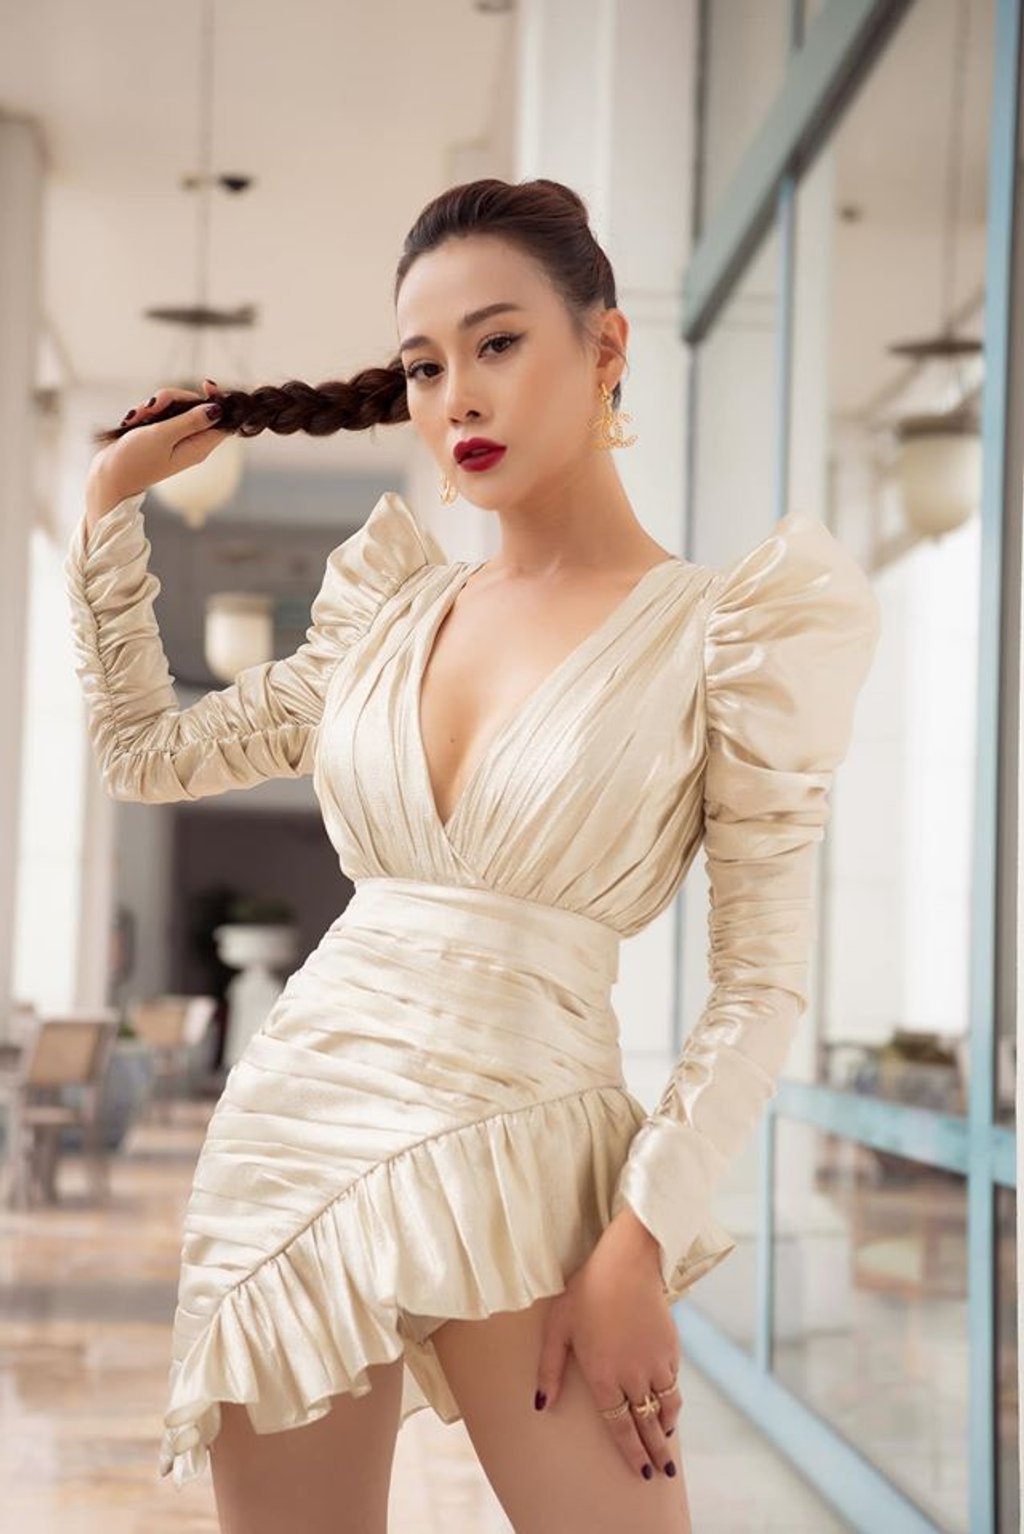 So với ngày mới vào nghề, Phương Oanh ngày càng thăng hạng nhan sắc và phong cách. Cô là một trong những nữ diễn viên hiếm hoi của VTV tài sắc vẹn toàn đến gu thời trang cũng vô cùng hút mắt.